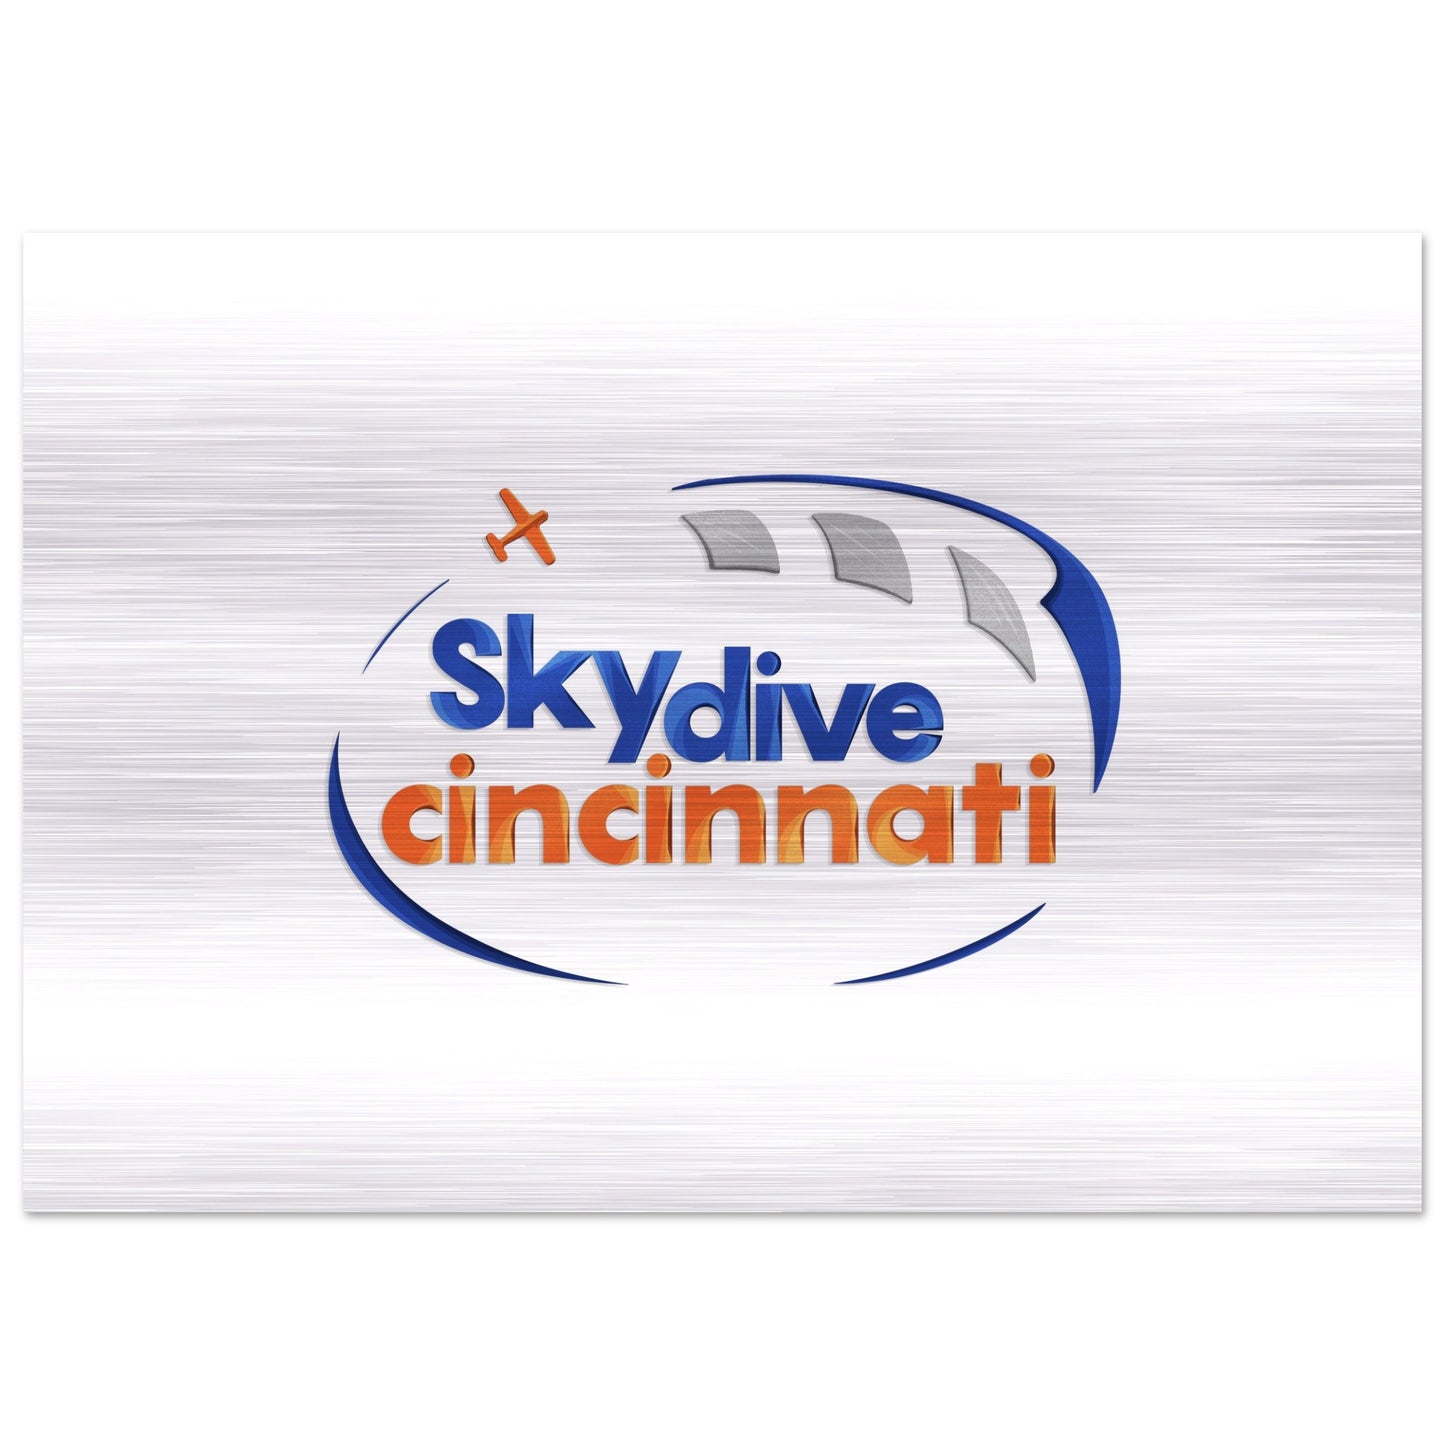 Skydive Cincinnati - Brushed Aluminum Print